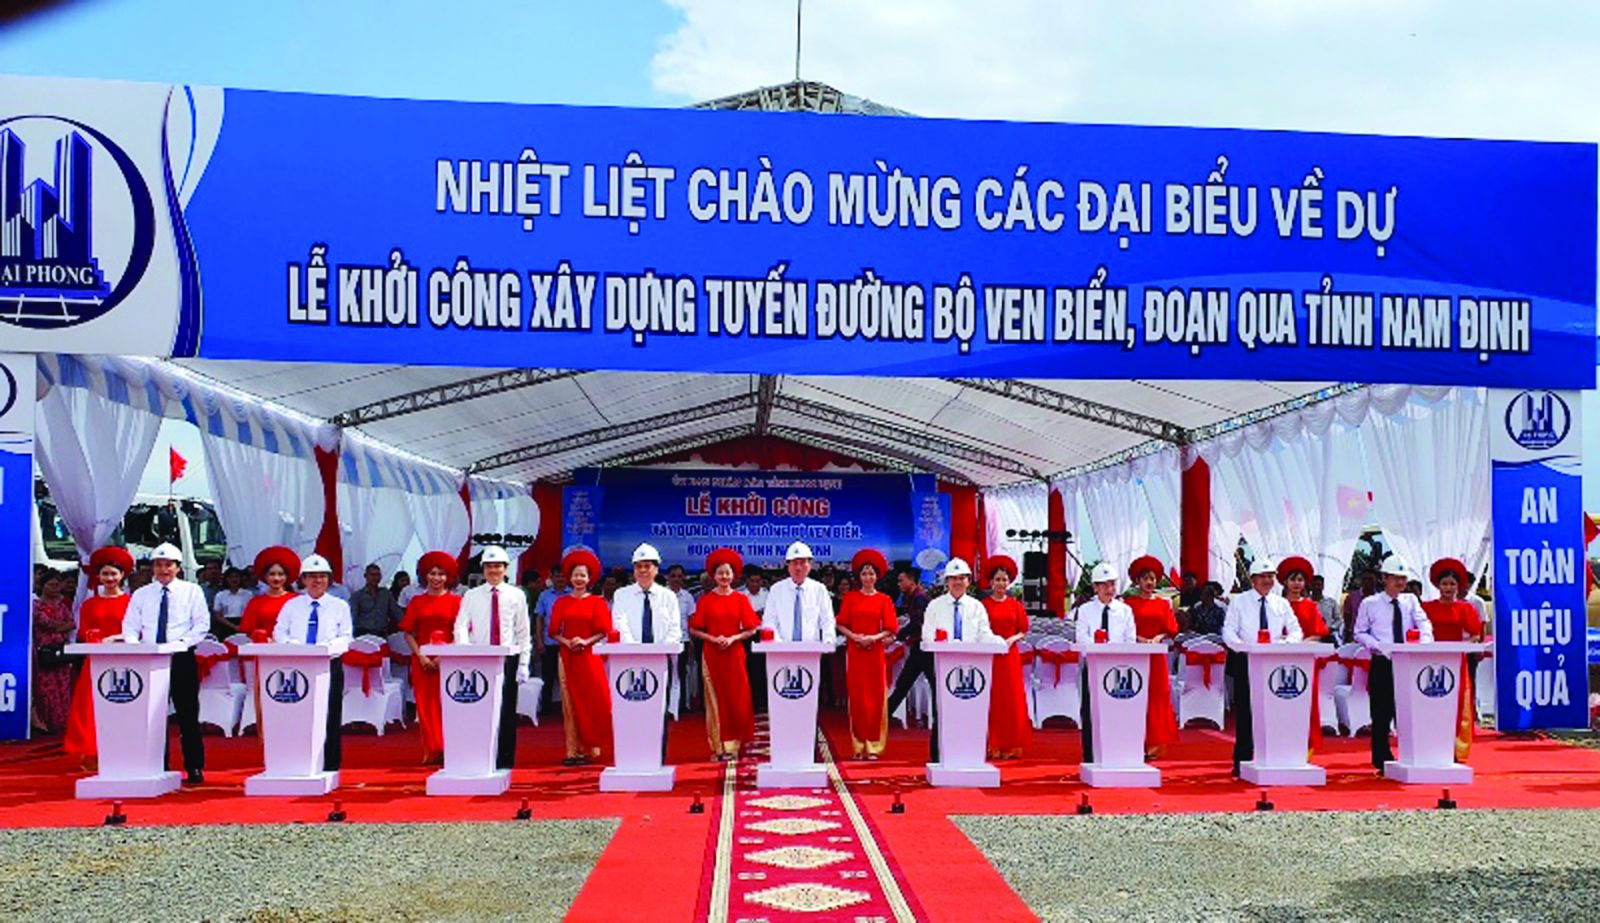  Dự án xây dựng tuyến đường bộ ven biển, đoạn qua tỉnh Nam Định có tổng chiều dài 65,58 km do Ban làm chủ đầu tư đã được khởi công và đẩy nhanh tiến độ thi công.